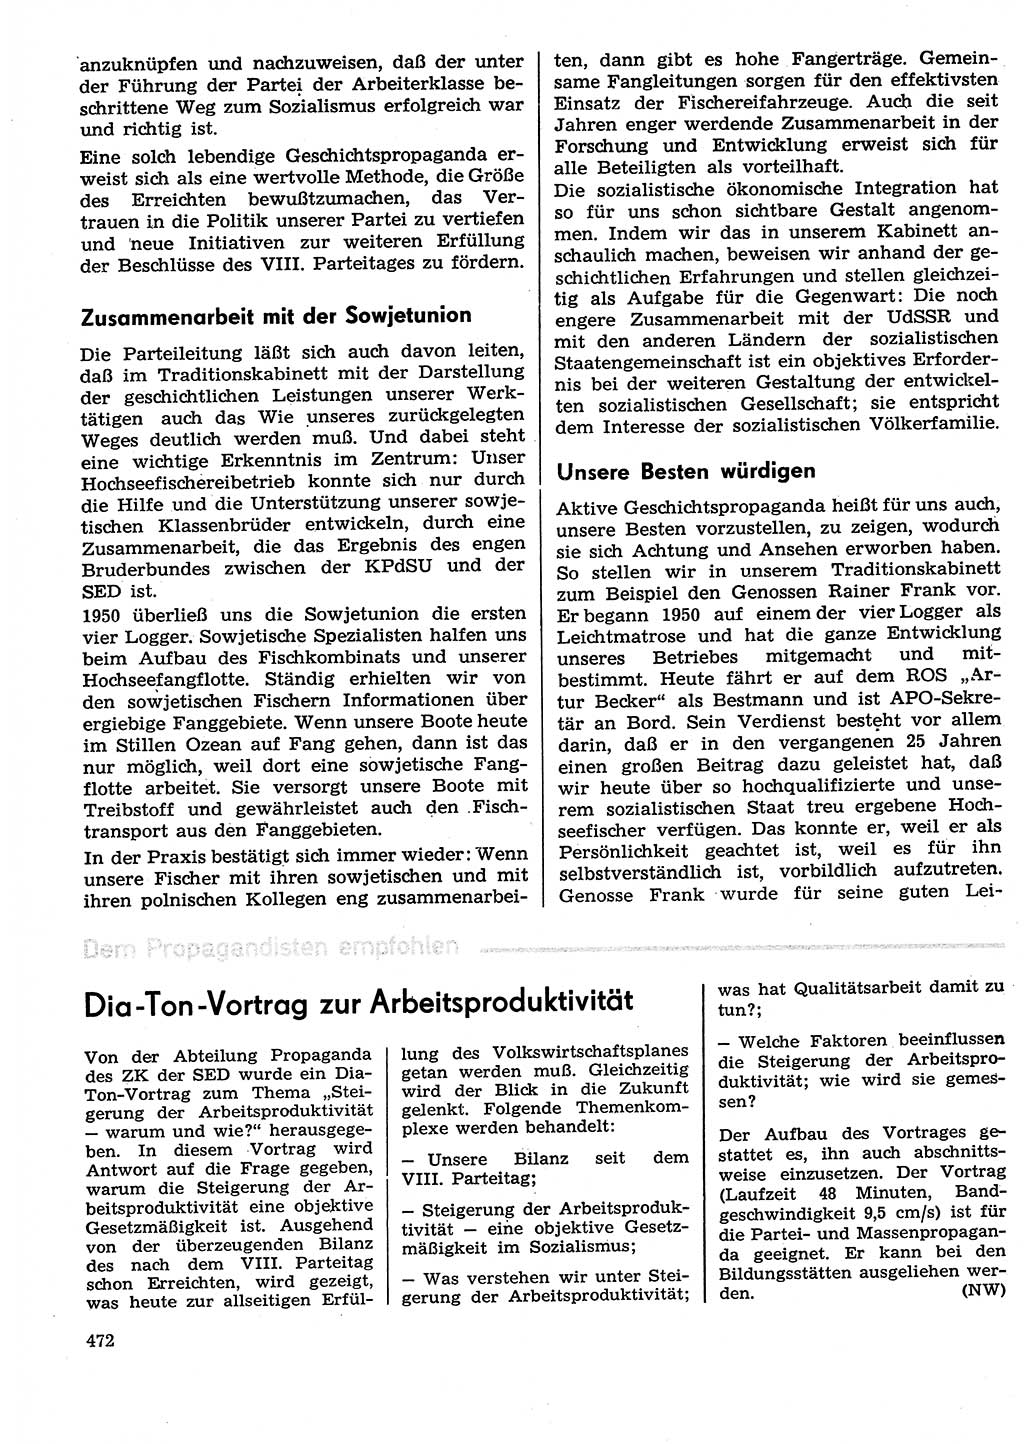 Neuer Weg (NW), Organ des Zentralkomitees (ZK) der SED (Sozialistische Einheitspartei Deutschlands) für Fragen des Parteilebens, 29. Jahrgang [Deutsche Demokratische Republik (DDR)] 1974, Seite 472 (NW ZK SED DDR 1974, S. 472)